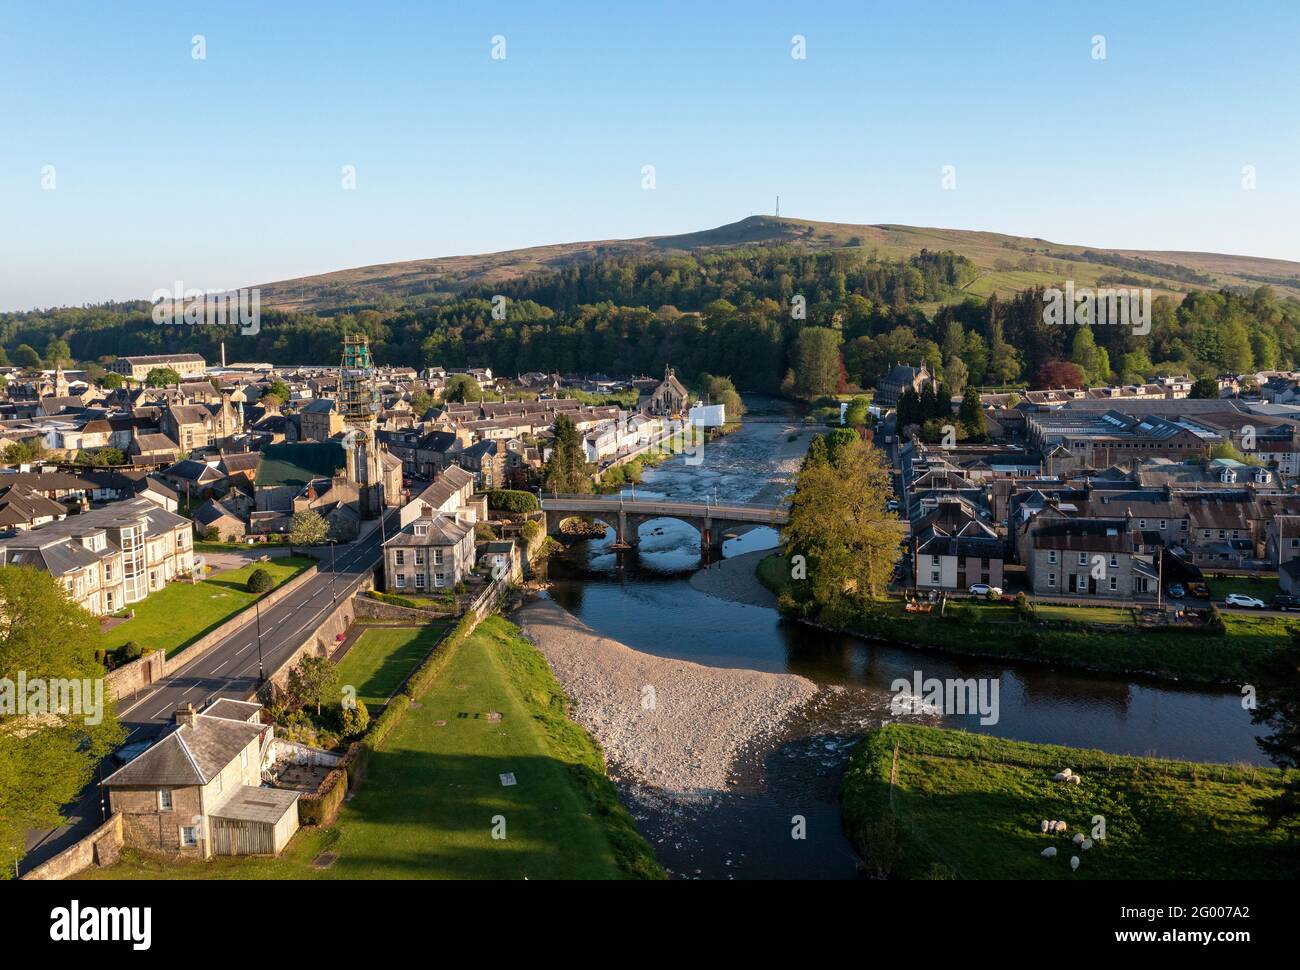 Vista aérea del centro de la ciudad de Langholm situado en el cruce del río Esk y el río EWS, Dumfries & Galloway, Scottish Borders, Escocia, Reino Unido. Foto de stock